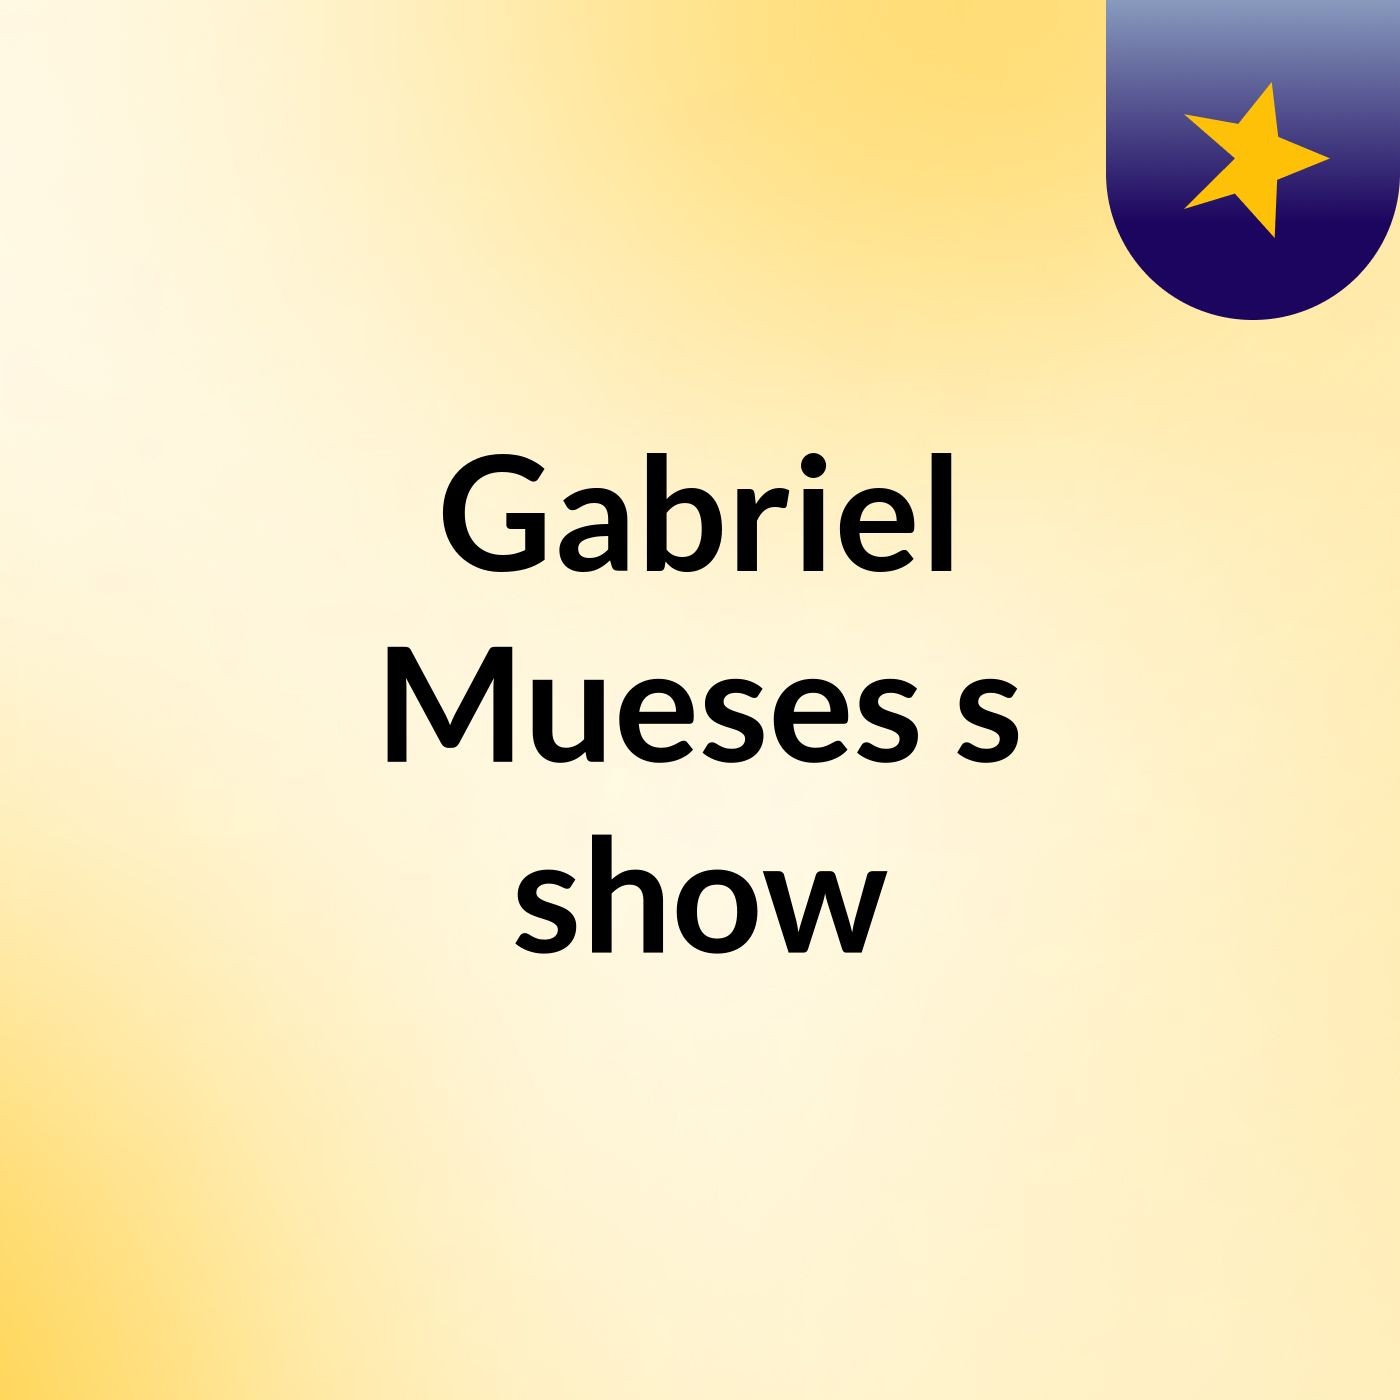 Gabriel Mueses's show